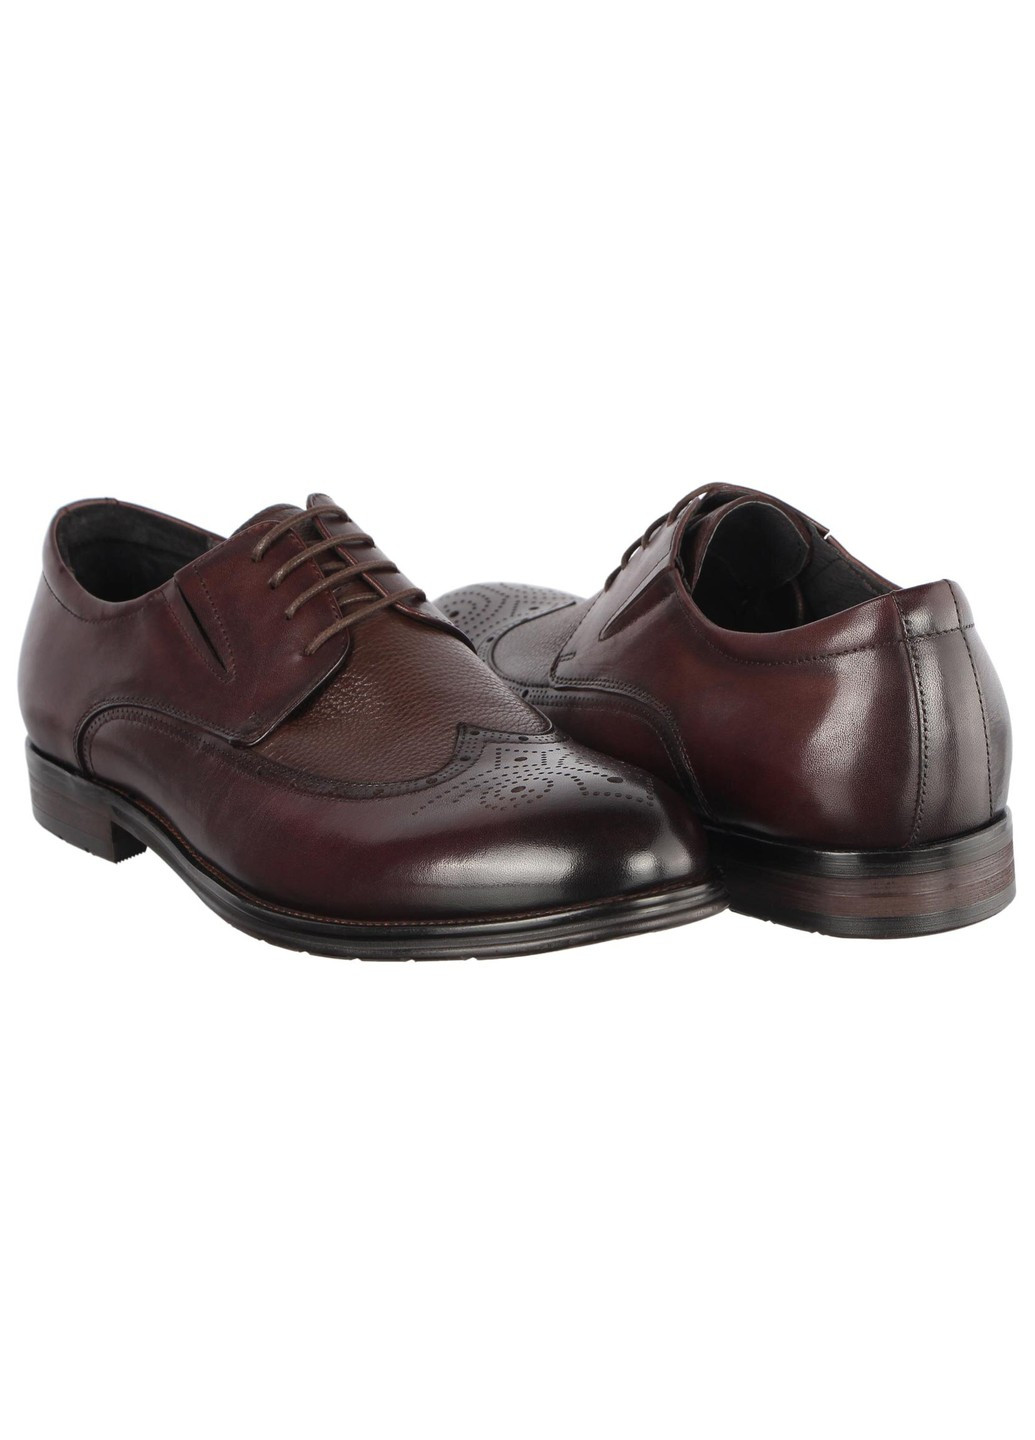 Коричневые мужские классические туфли 196421 Buts на шнурках